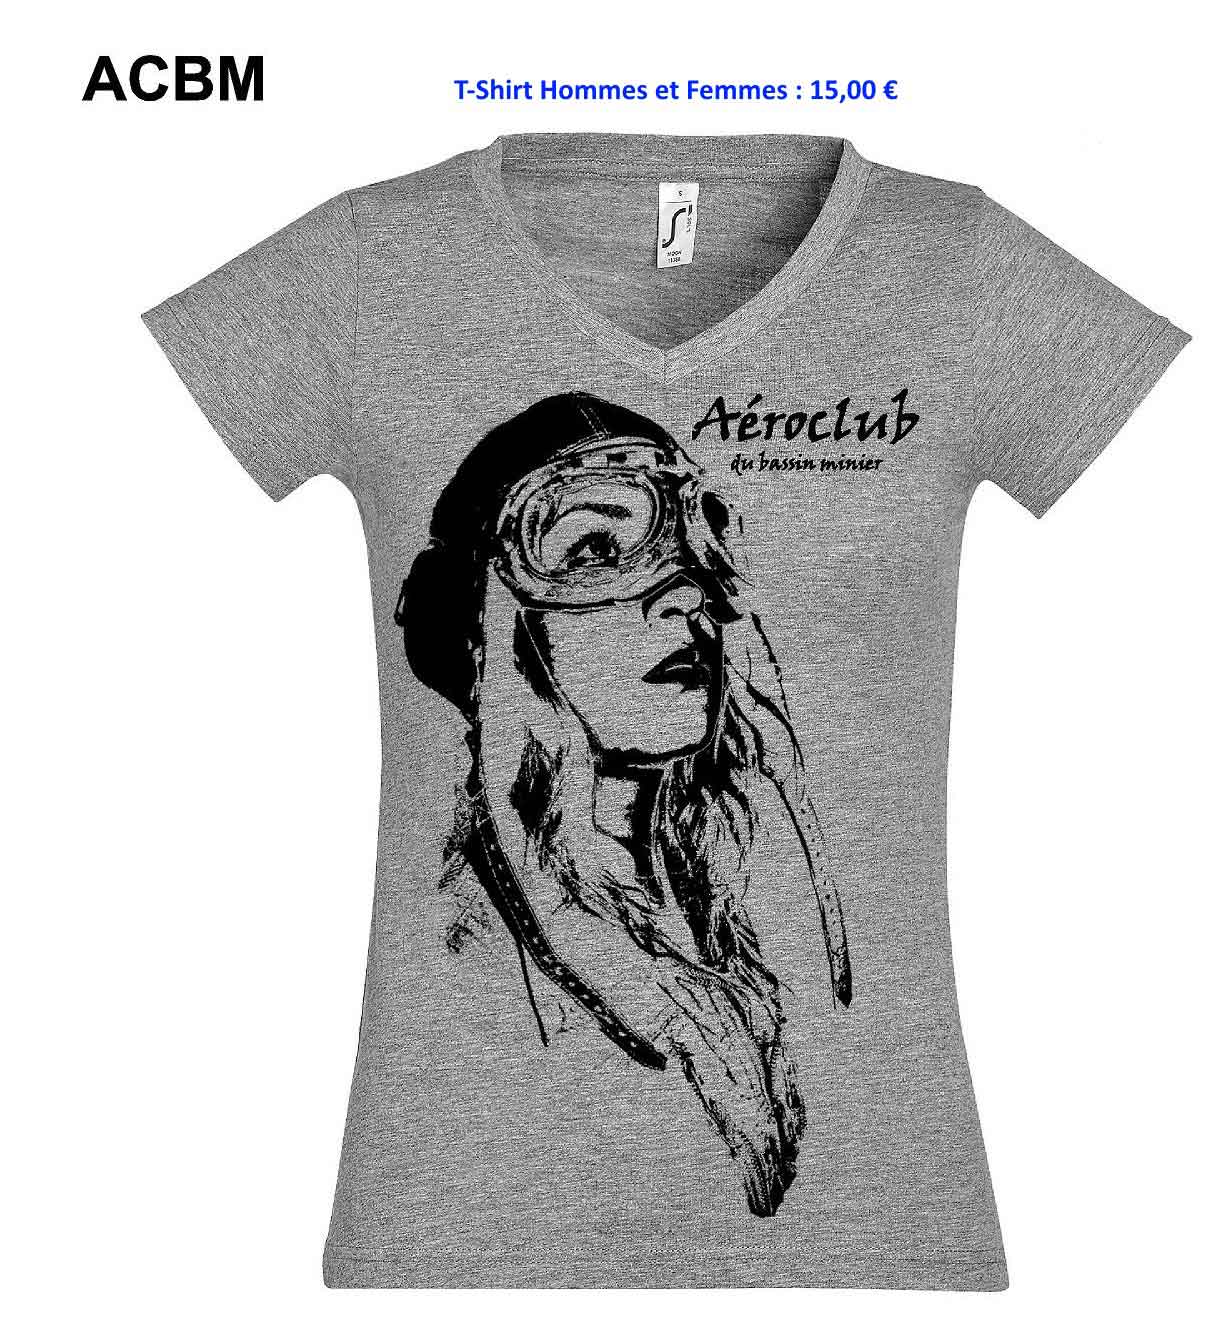 ACBM tee shirts webtarif